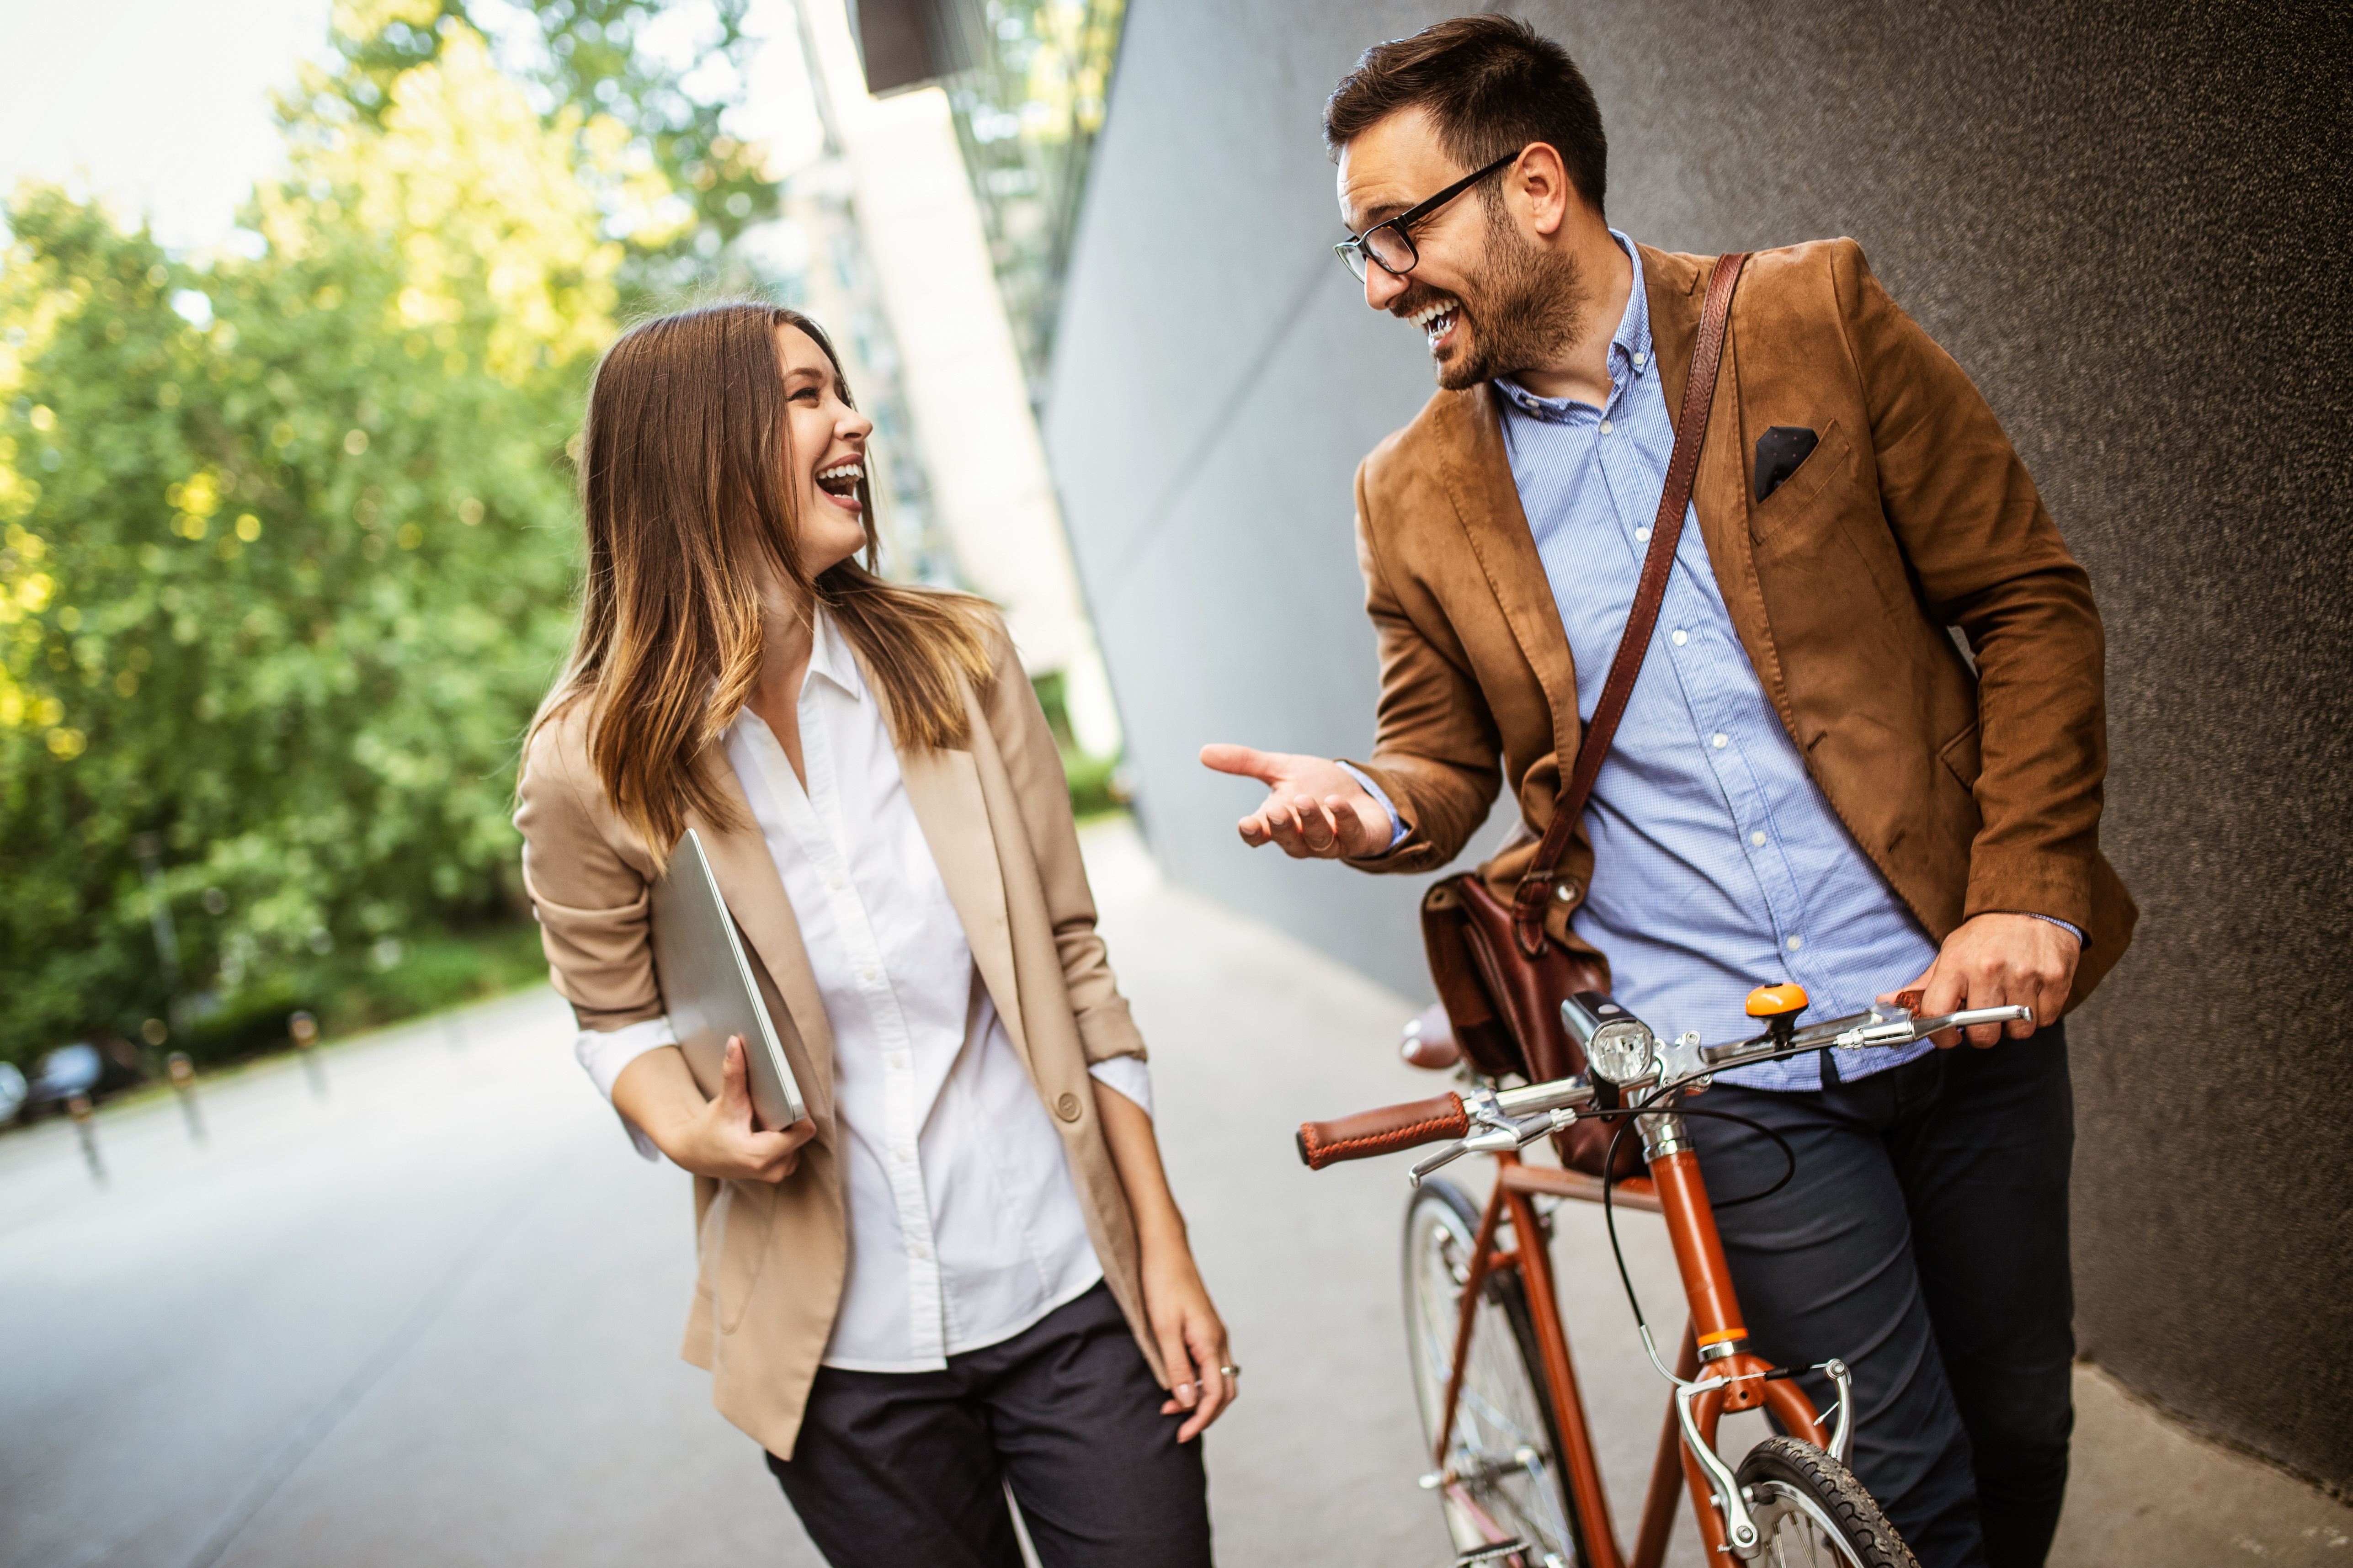 Een man en een vrouw lopen over straat, de man heeft een rode fiets in de hand. De twee mensen lachen naar elkaar